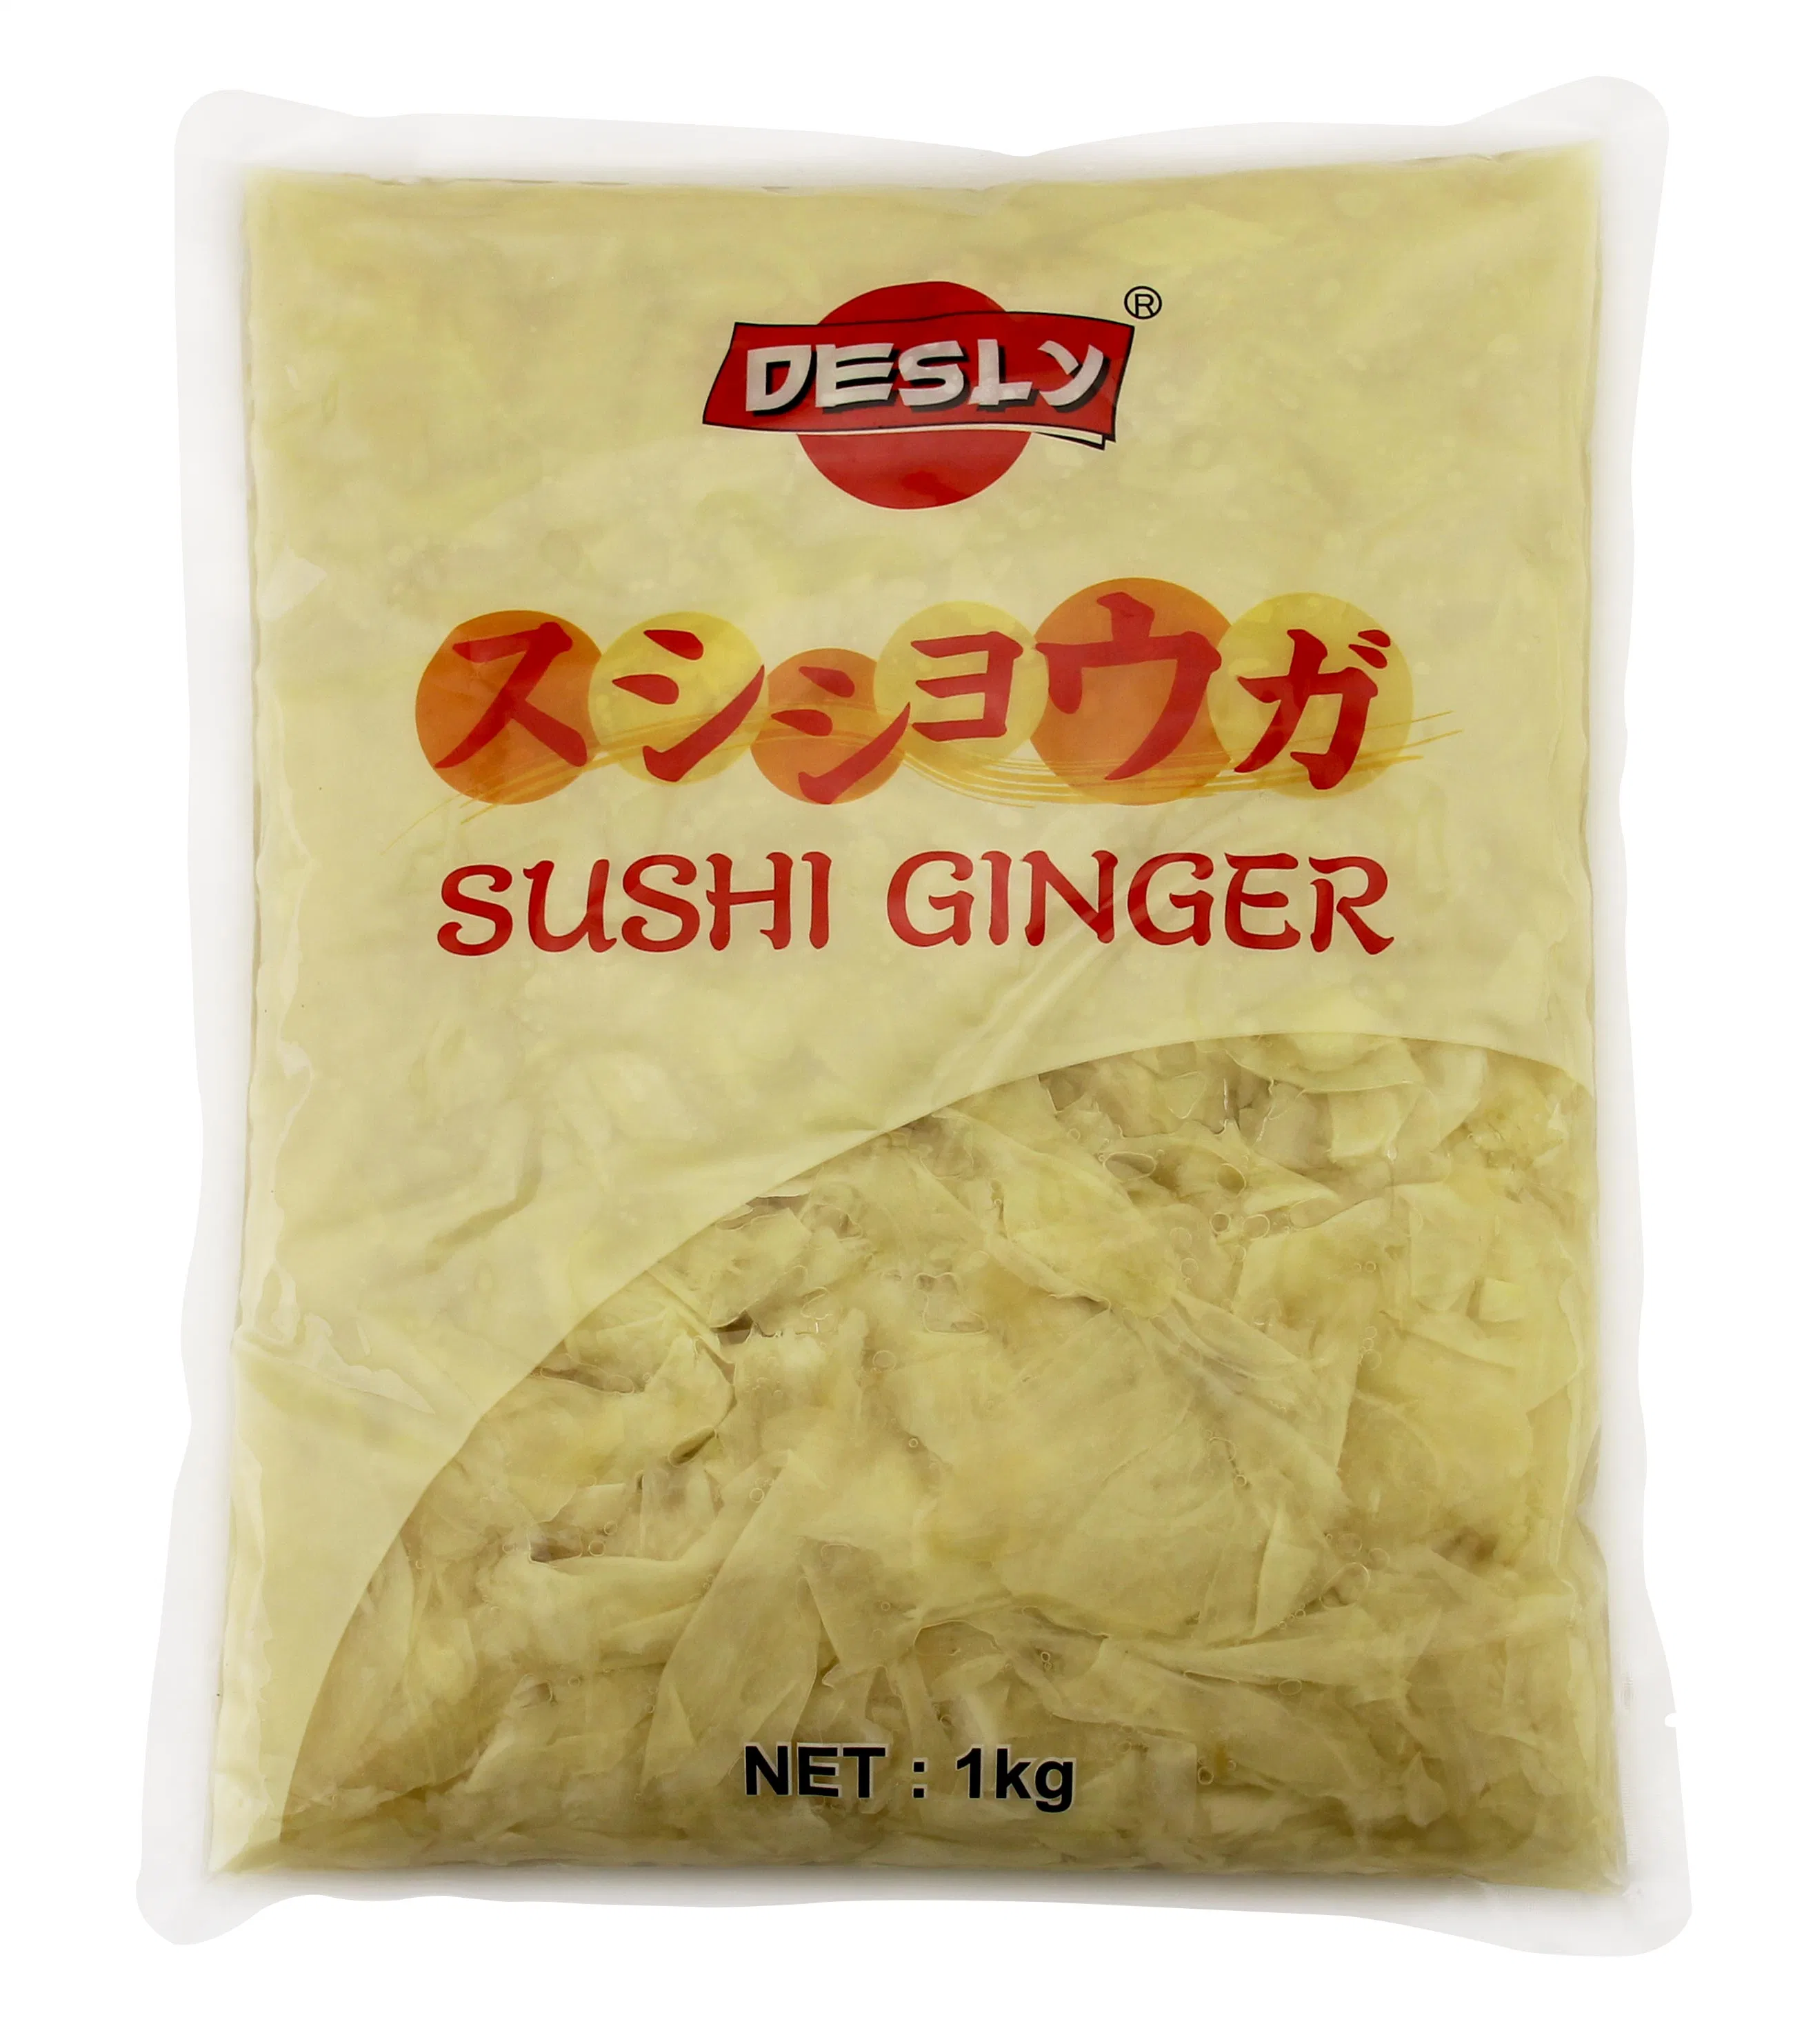 1 كغ من طبق البيك الياباني مع قطع صفراء سوشي جينجر الممزقة للحوم من أجل محلات السوبر ماركت والمطاعم